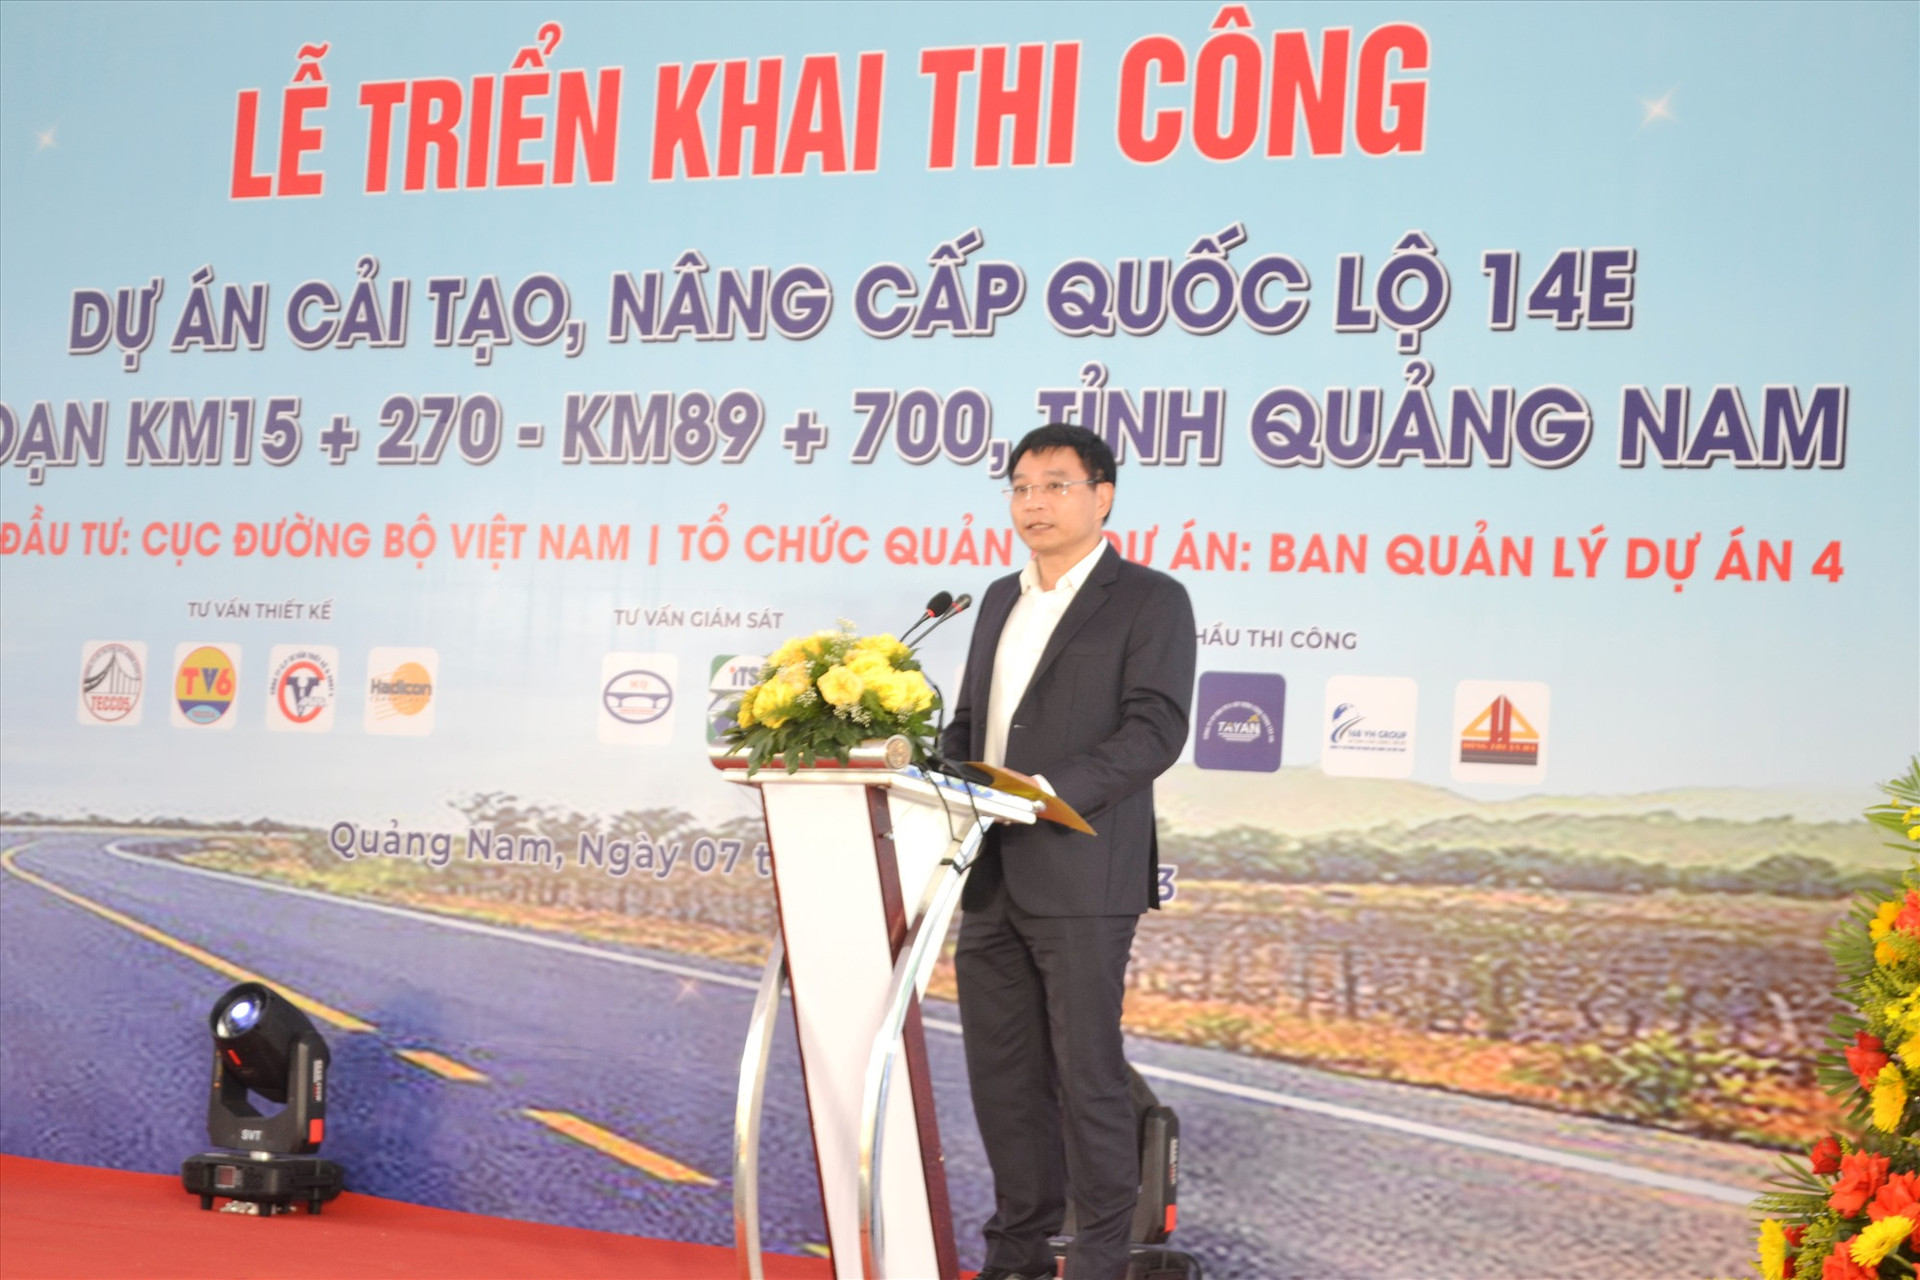 Bộ trưởng Nguyễn Văn Thắng đánh giá cao sự chỉ đạo chi tiết, cụ thể, quyết liệt của lãnh đạo UBND tỉnh đối với các địa phương, ban ngành liên quan tại buổi lễ. Ảnh: CT